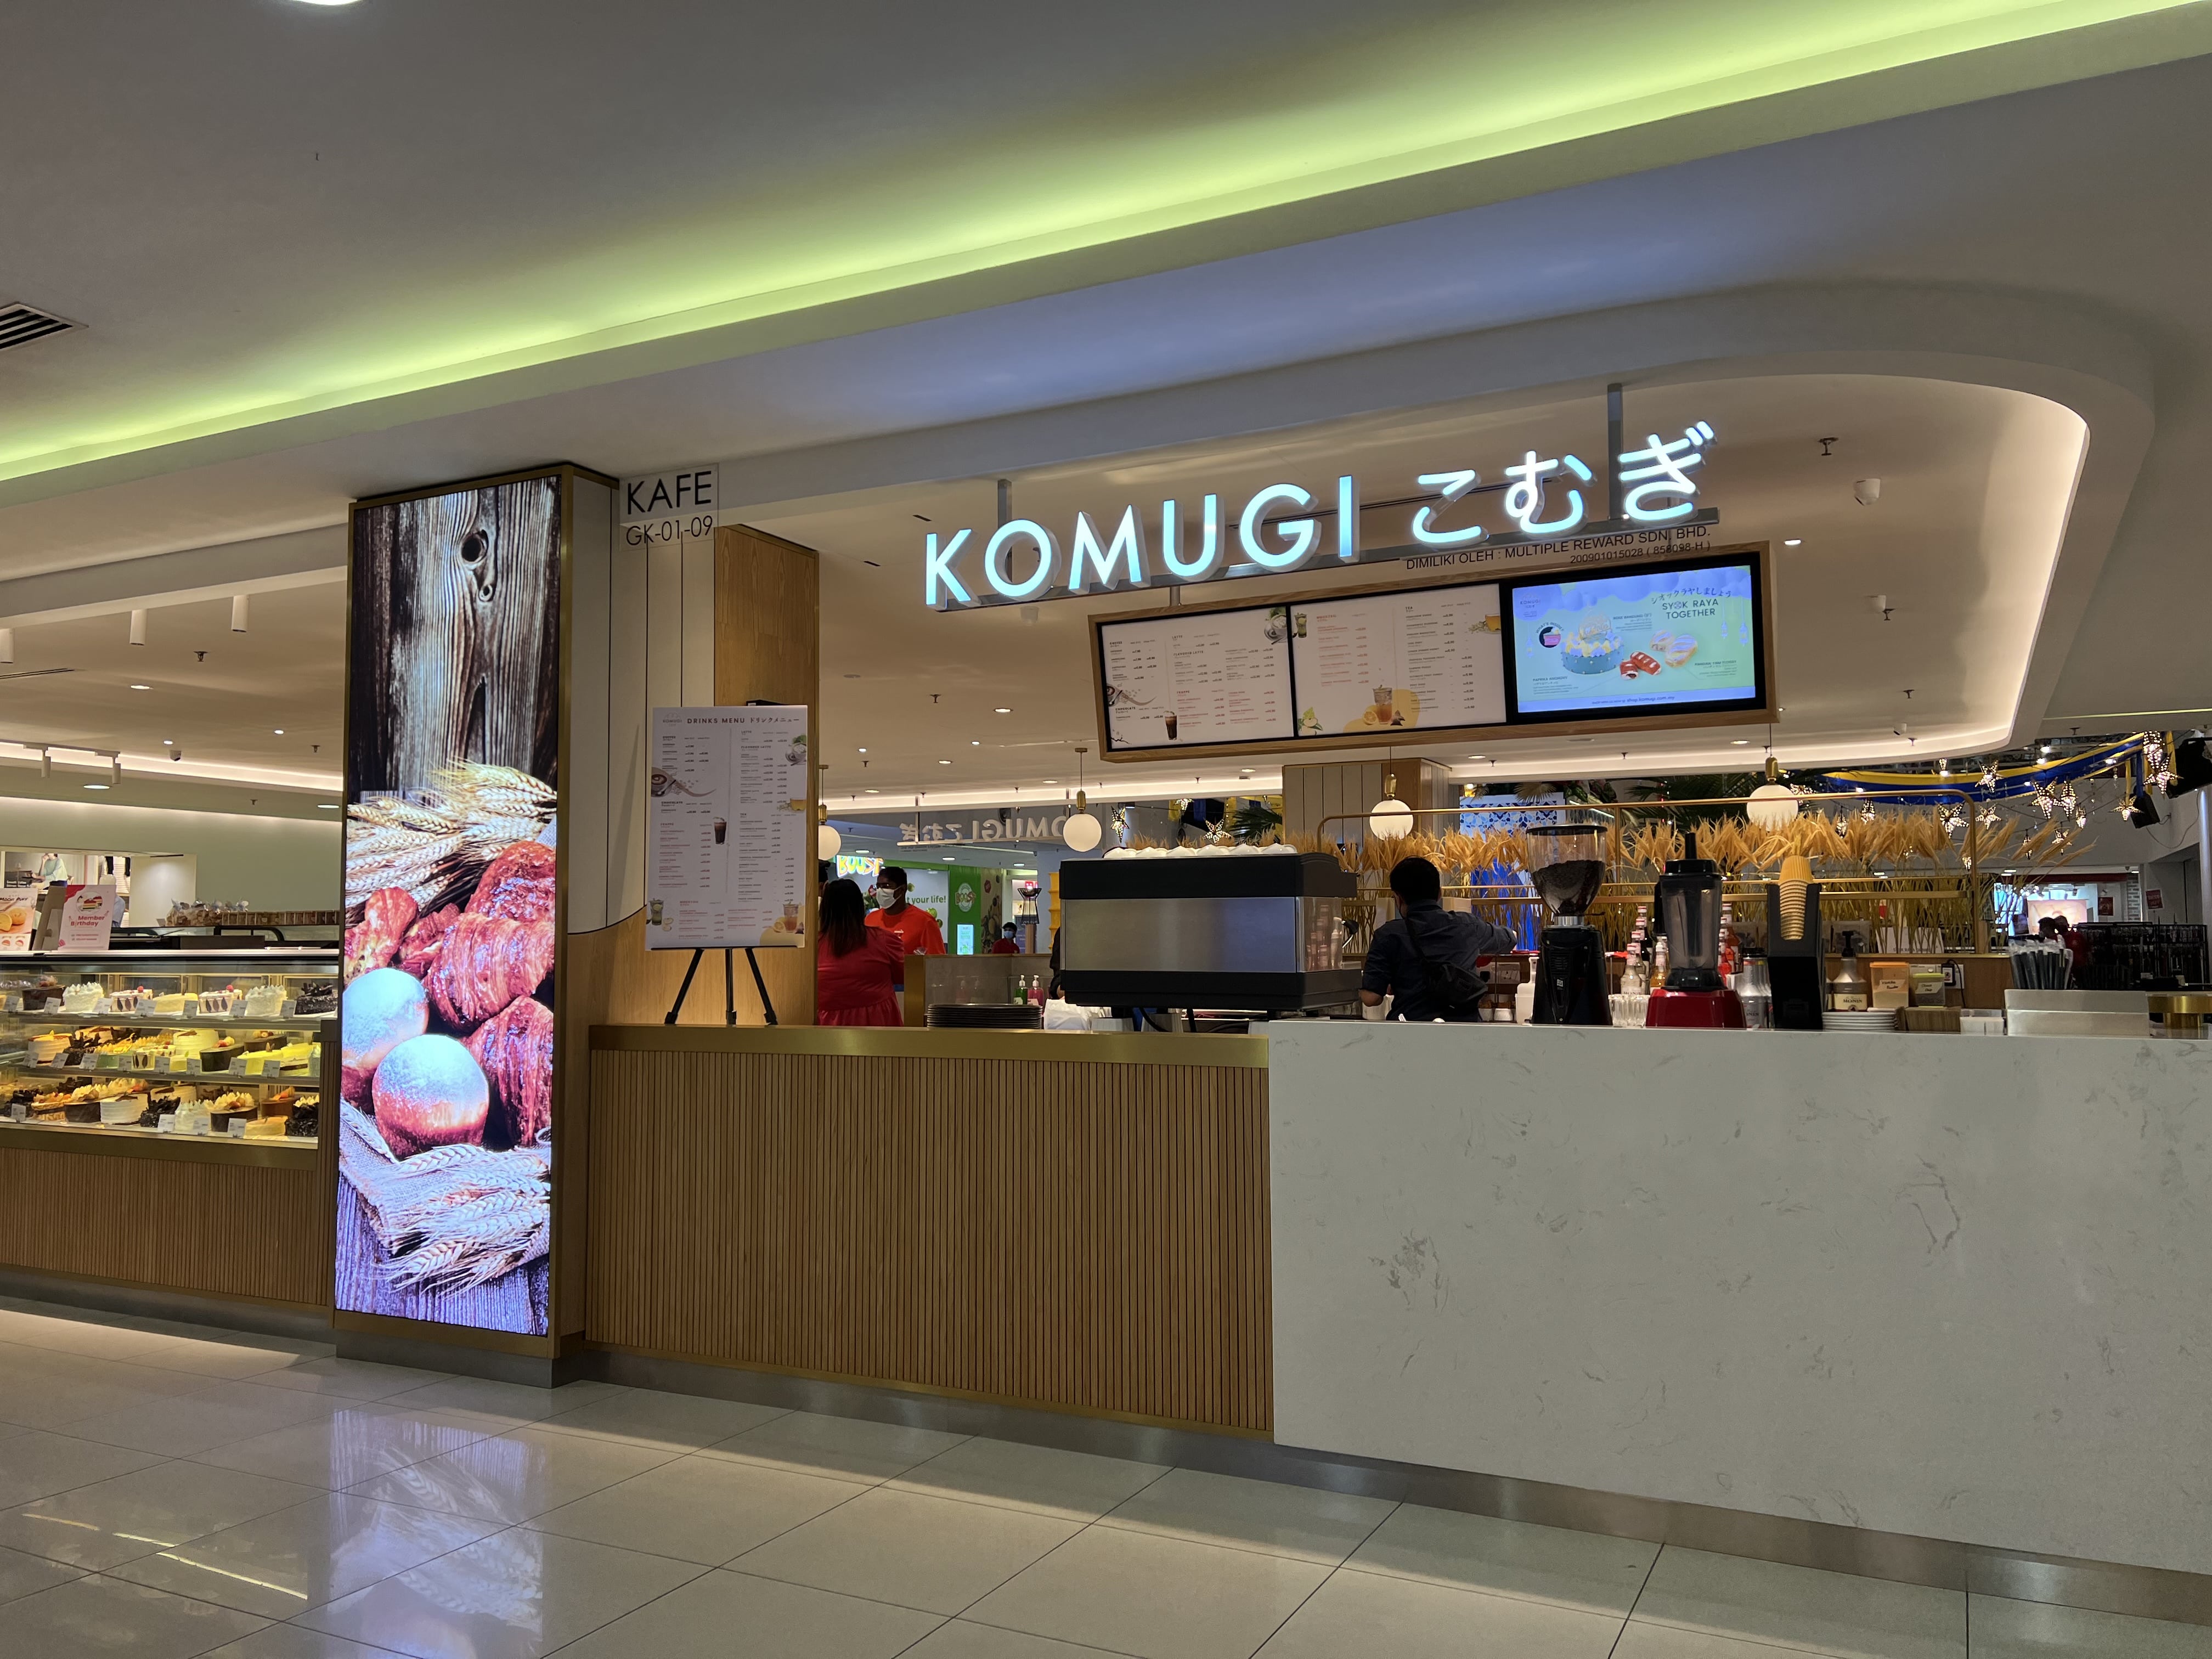 Komugi Cafe